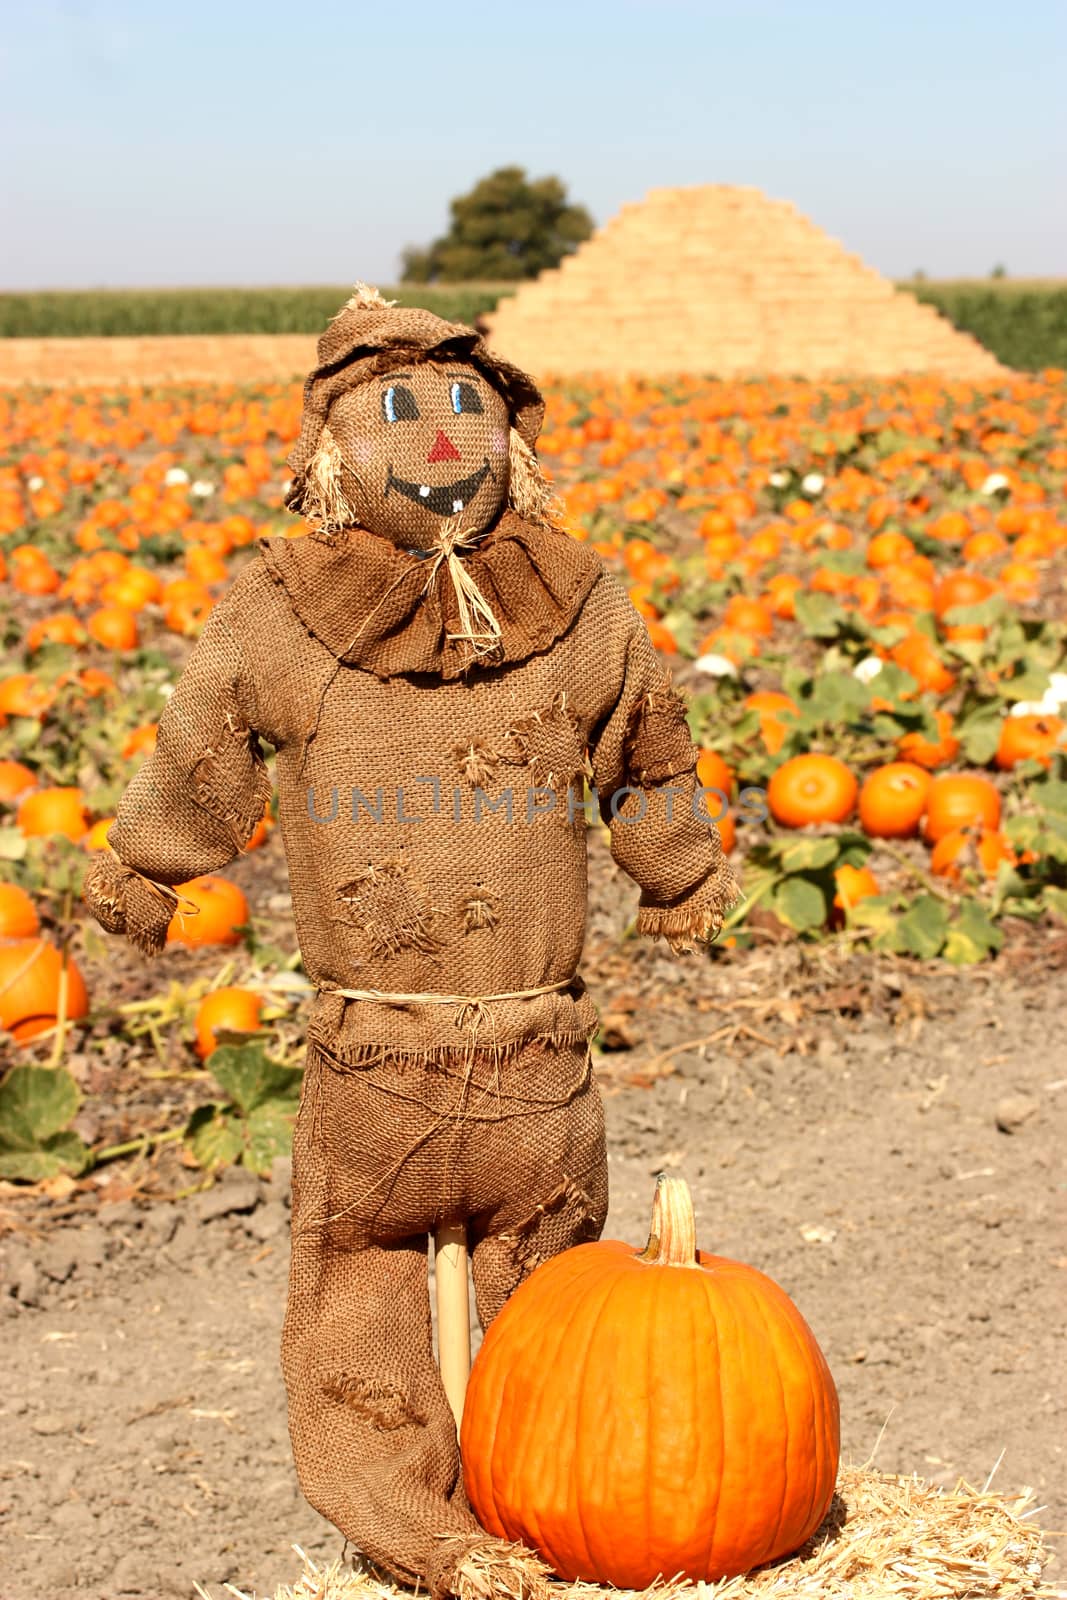 Scarecrow on autumn pumpkin field